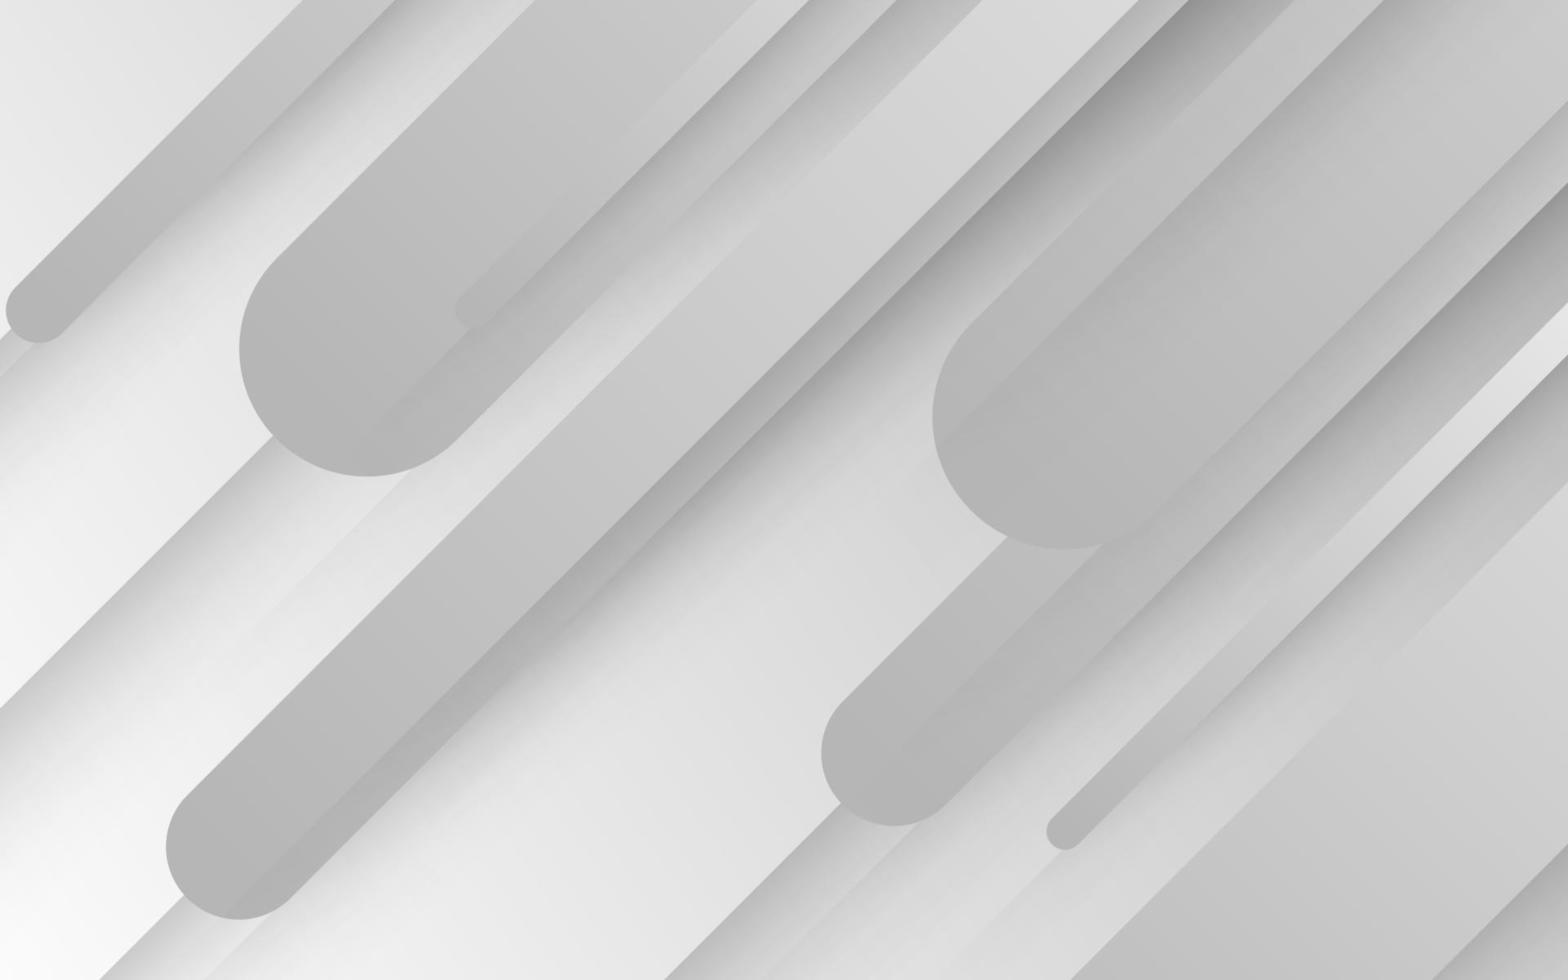 abstraktes weißes Grau mit abgerundetem Überlappungsform-Dekorationshintergrund. eps10-Vektor vektor